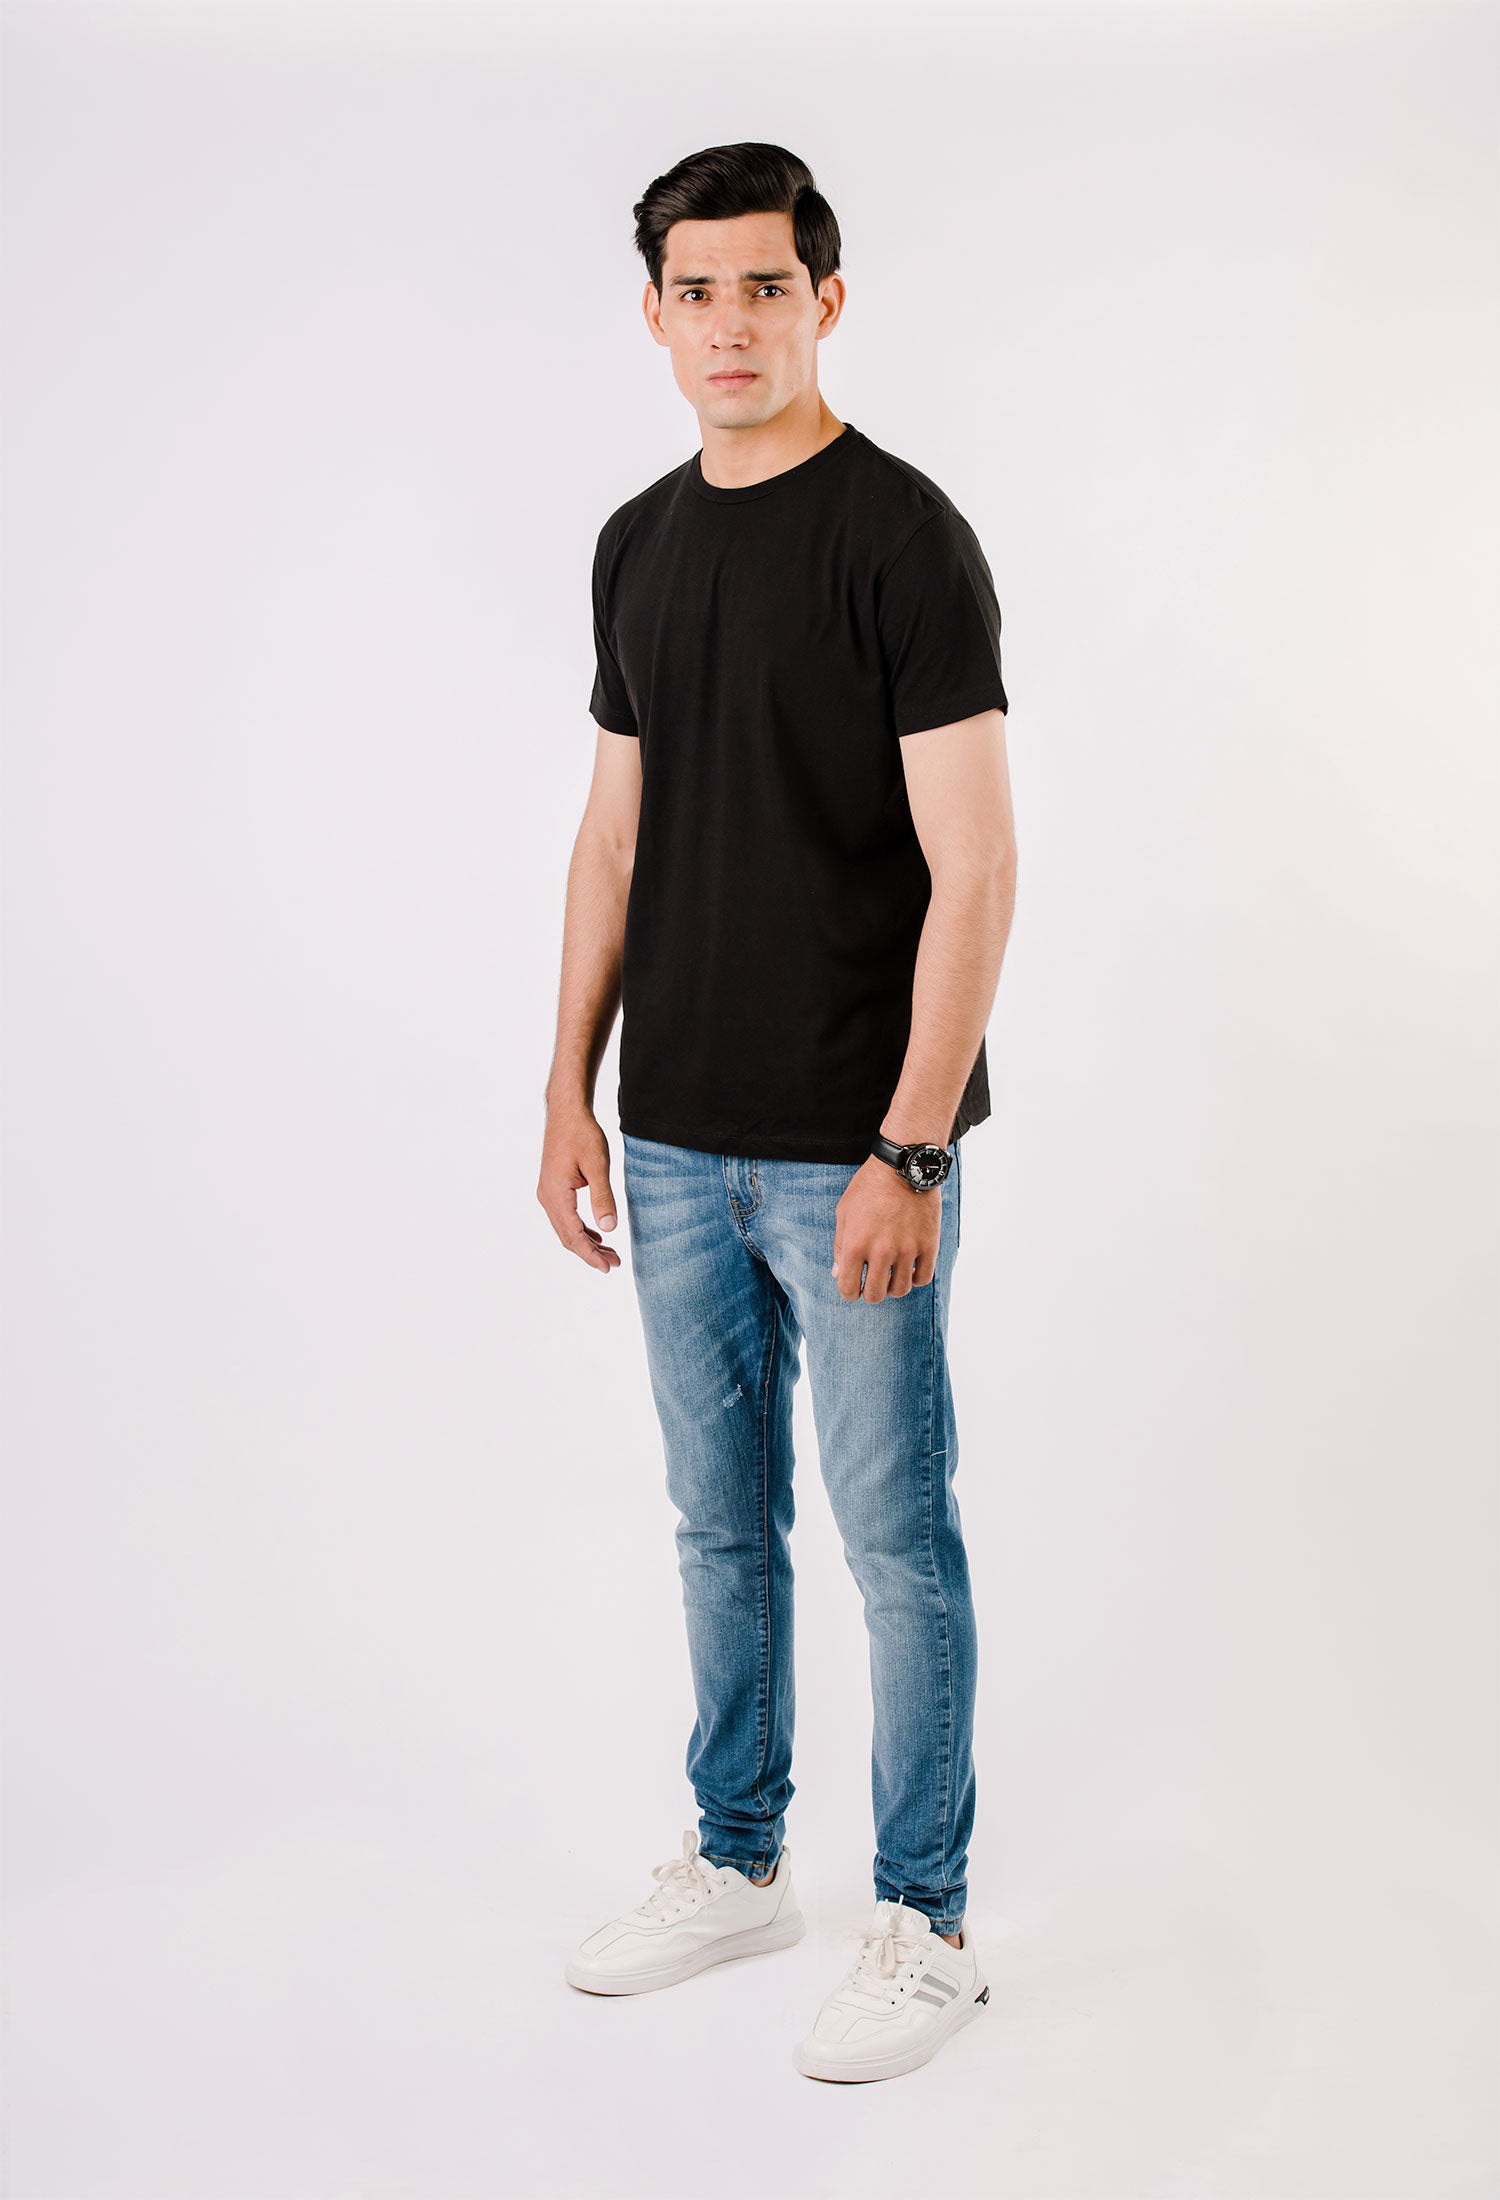 Black Basic T-Shirt (T-SHB-0001)